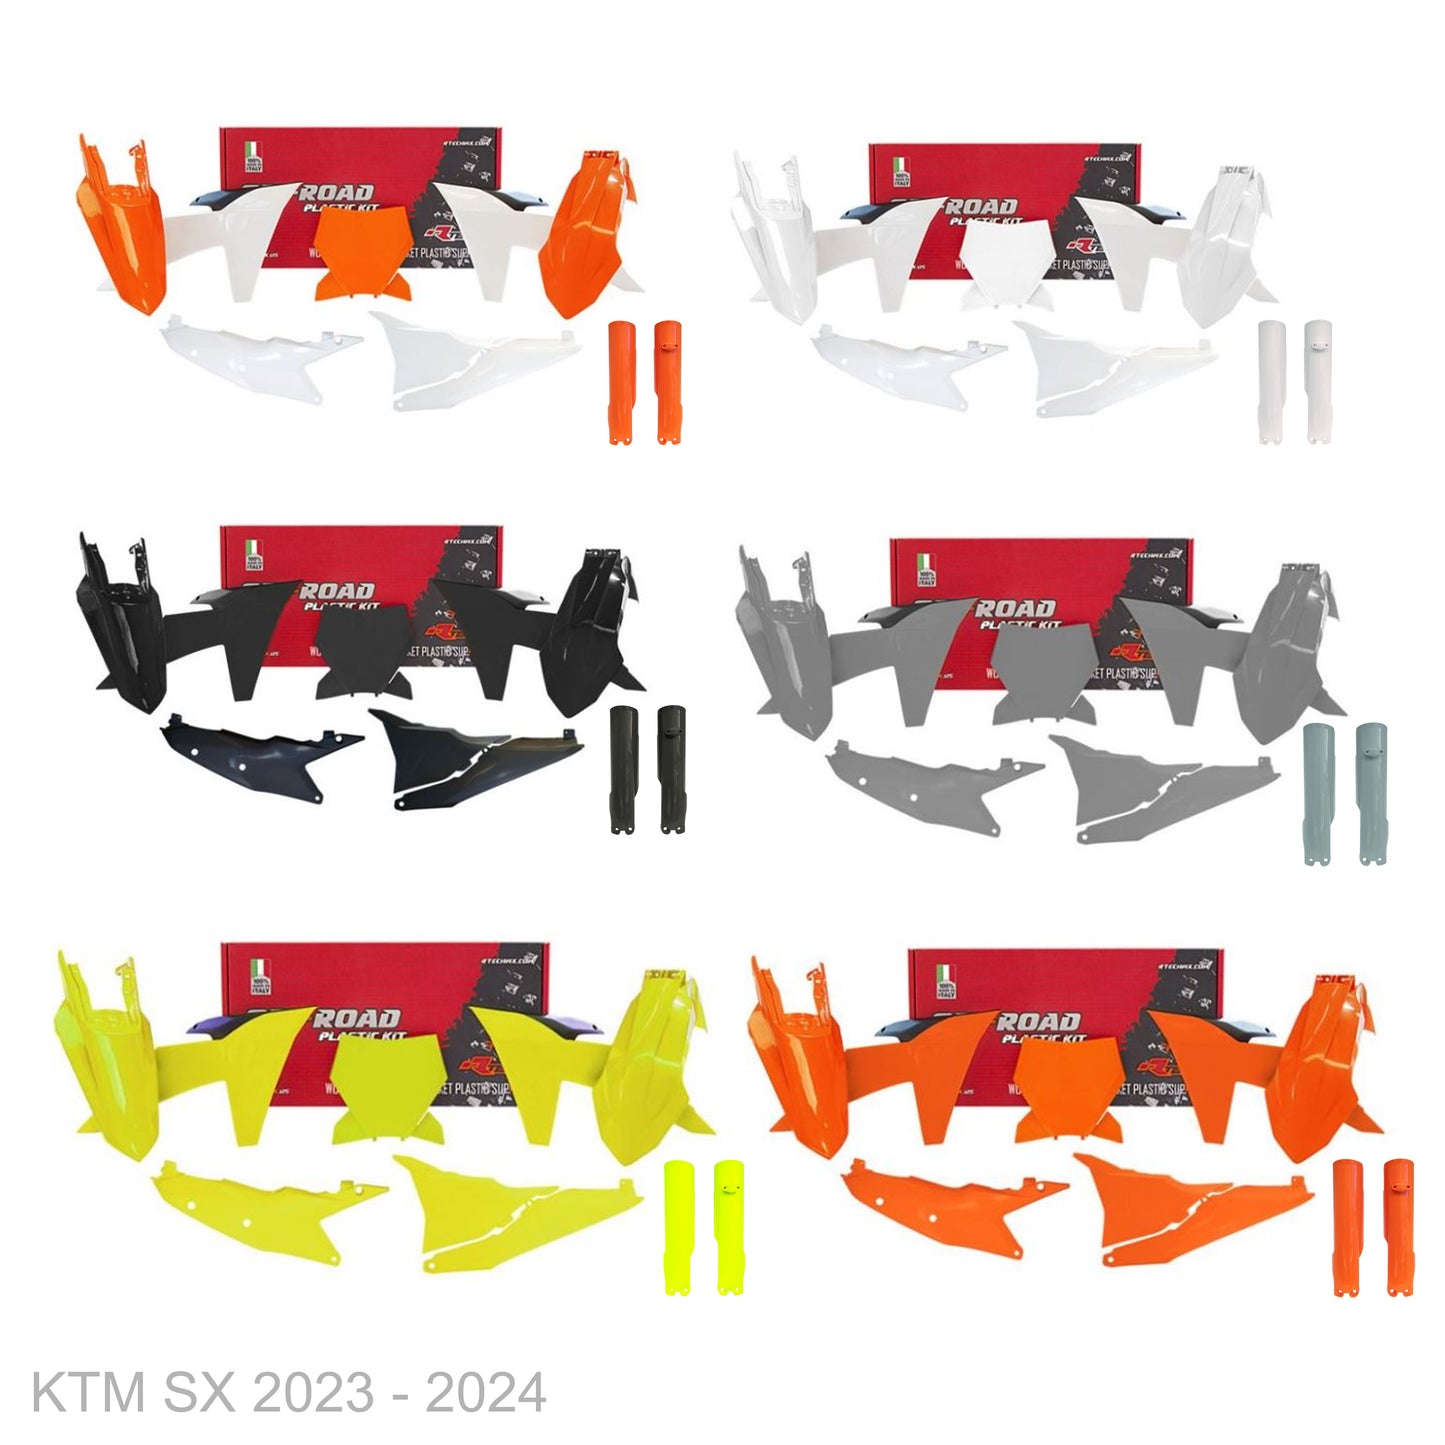 KTM SX/SXF 125/250/300/350/450 2023 - 2024 FIR Team Graphics Kit